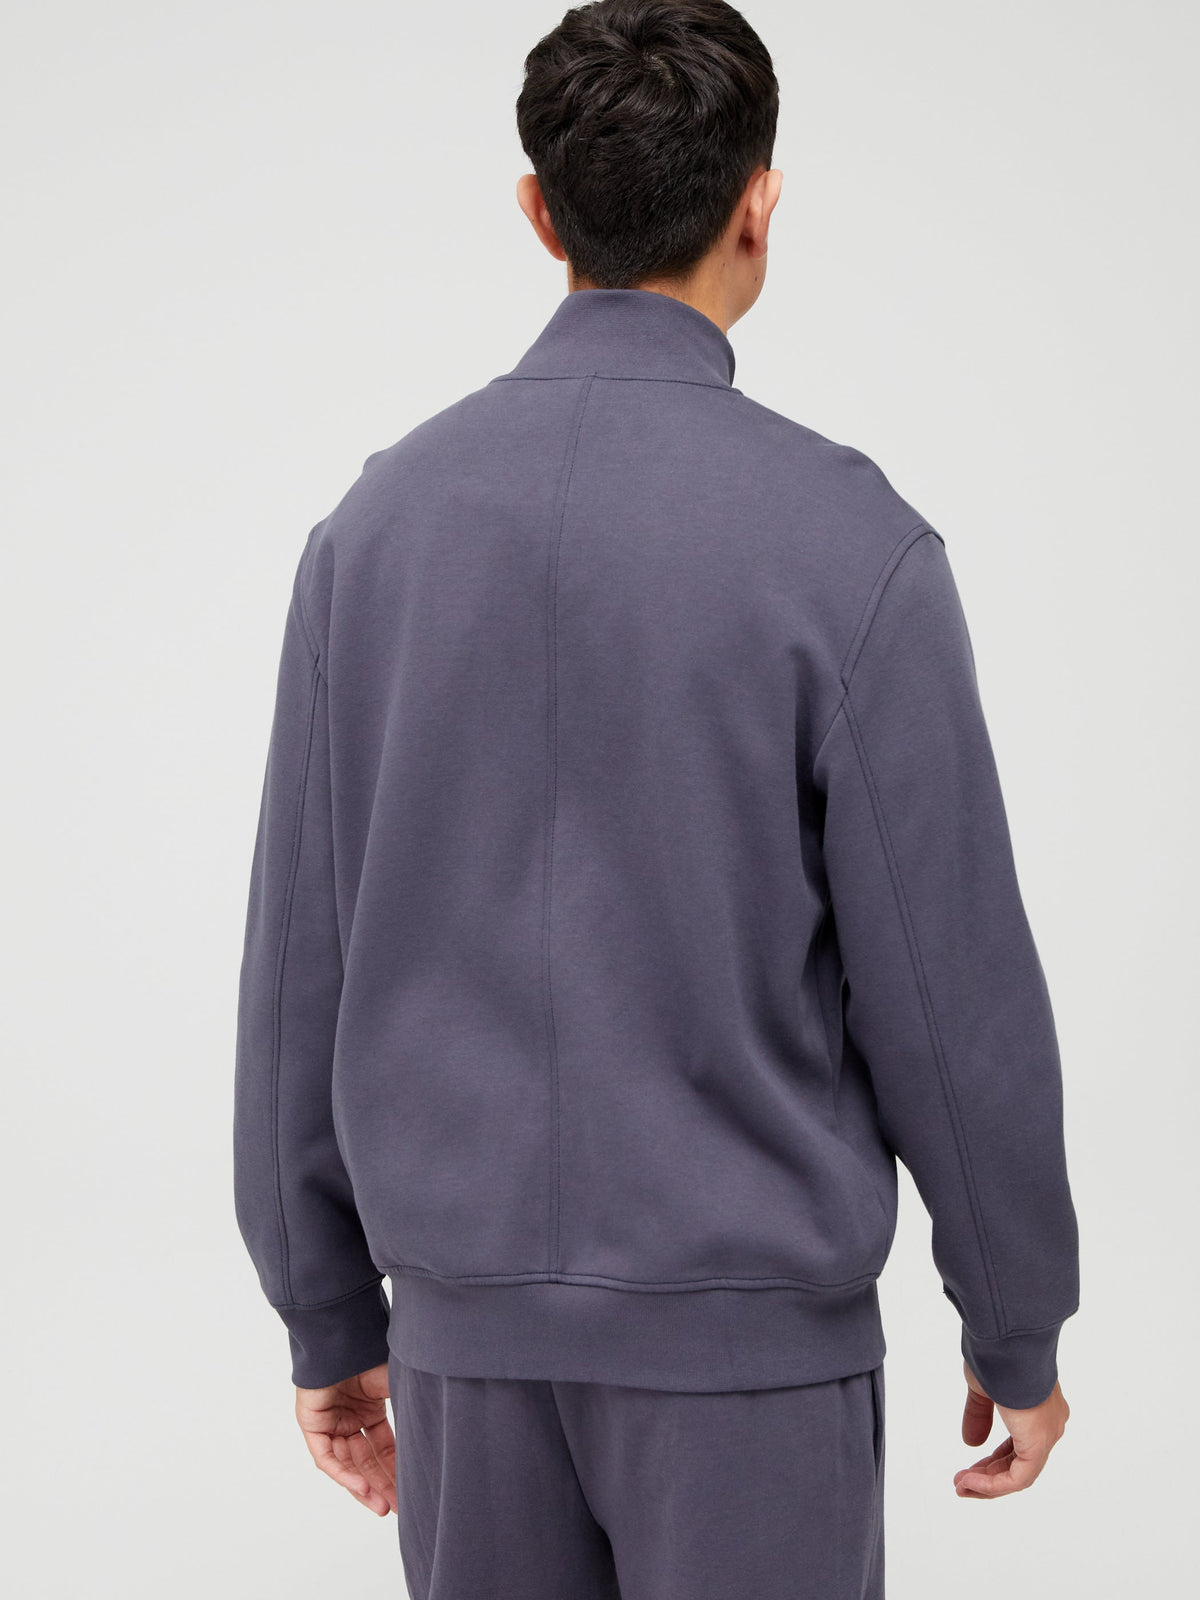 Mens Armani Exchange Debossed Texture Jacket in Grey